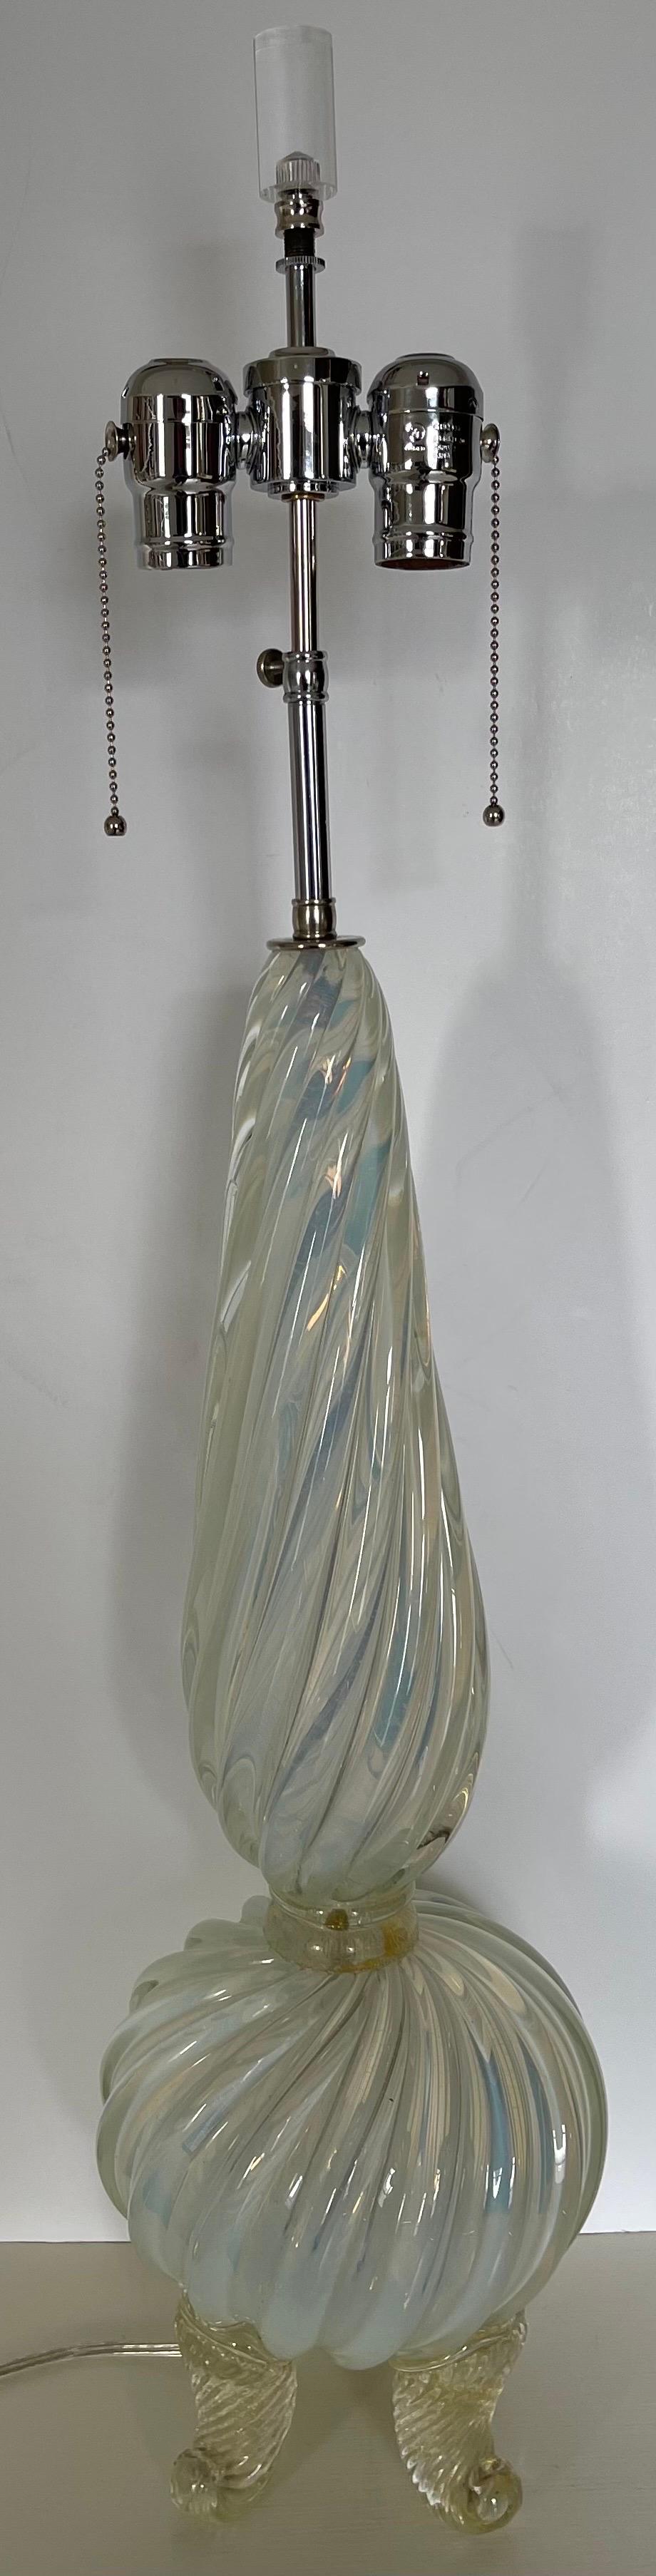 Paire de lampes de table en verre Murano de Barovier&Toso du milieu du siècle, avec des bases en forme de pieds de dauphins mouchetés d'or.
Le câblage a été refait avec des douilles doubles chromées réglables qui acceptent deux ampoules standard